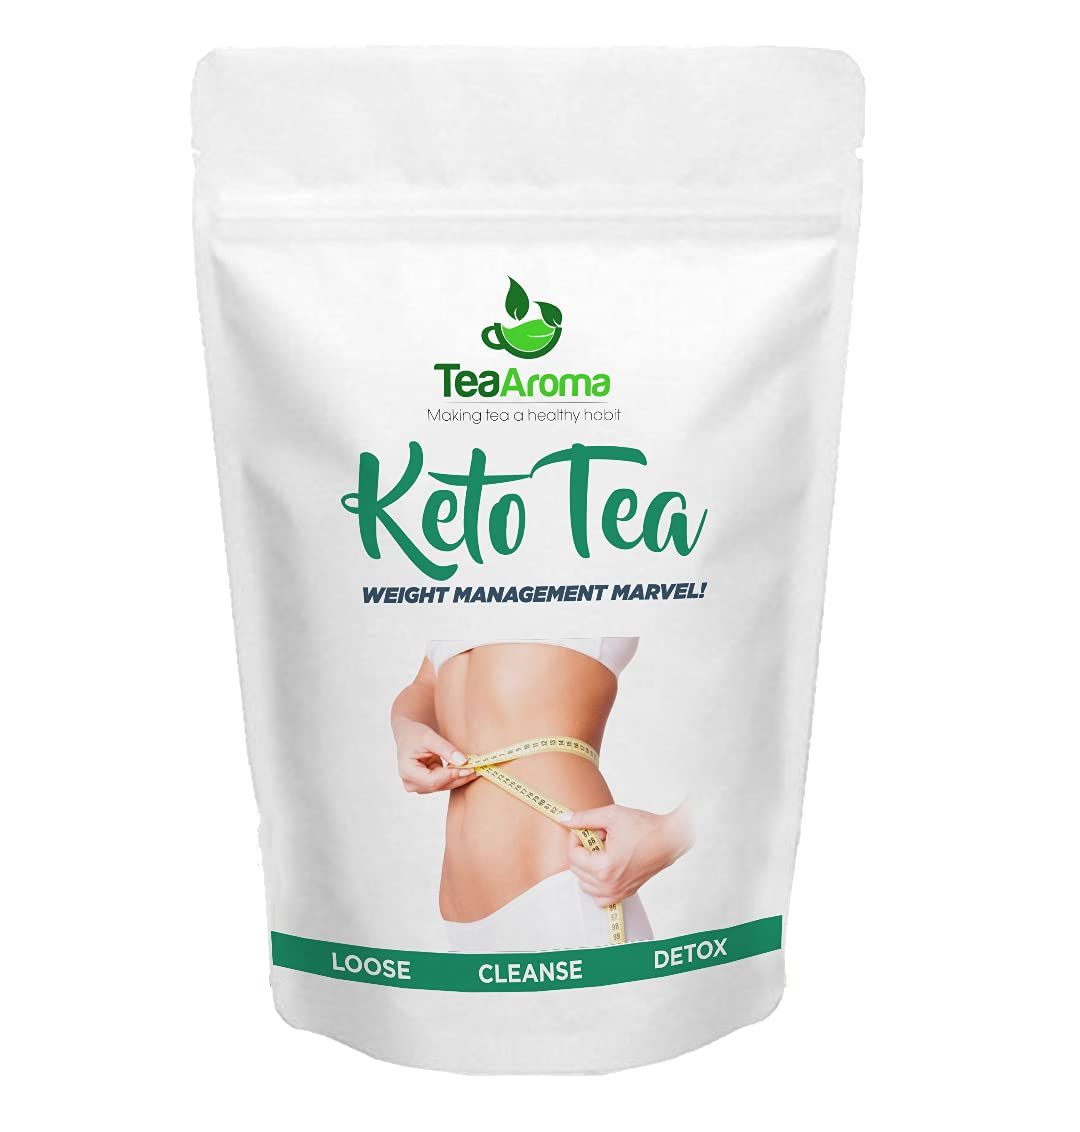 Tea Aroma Keto Tea Image